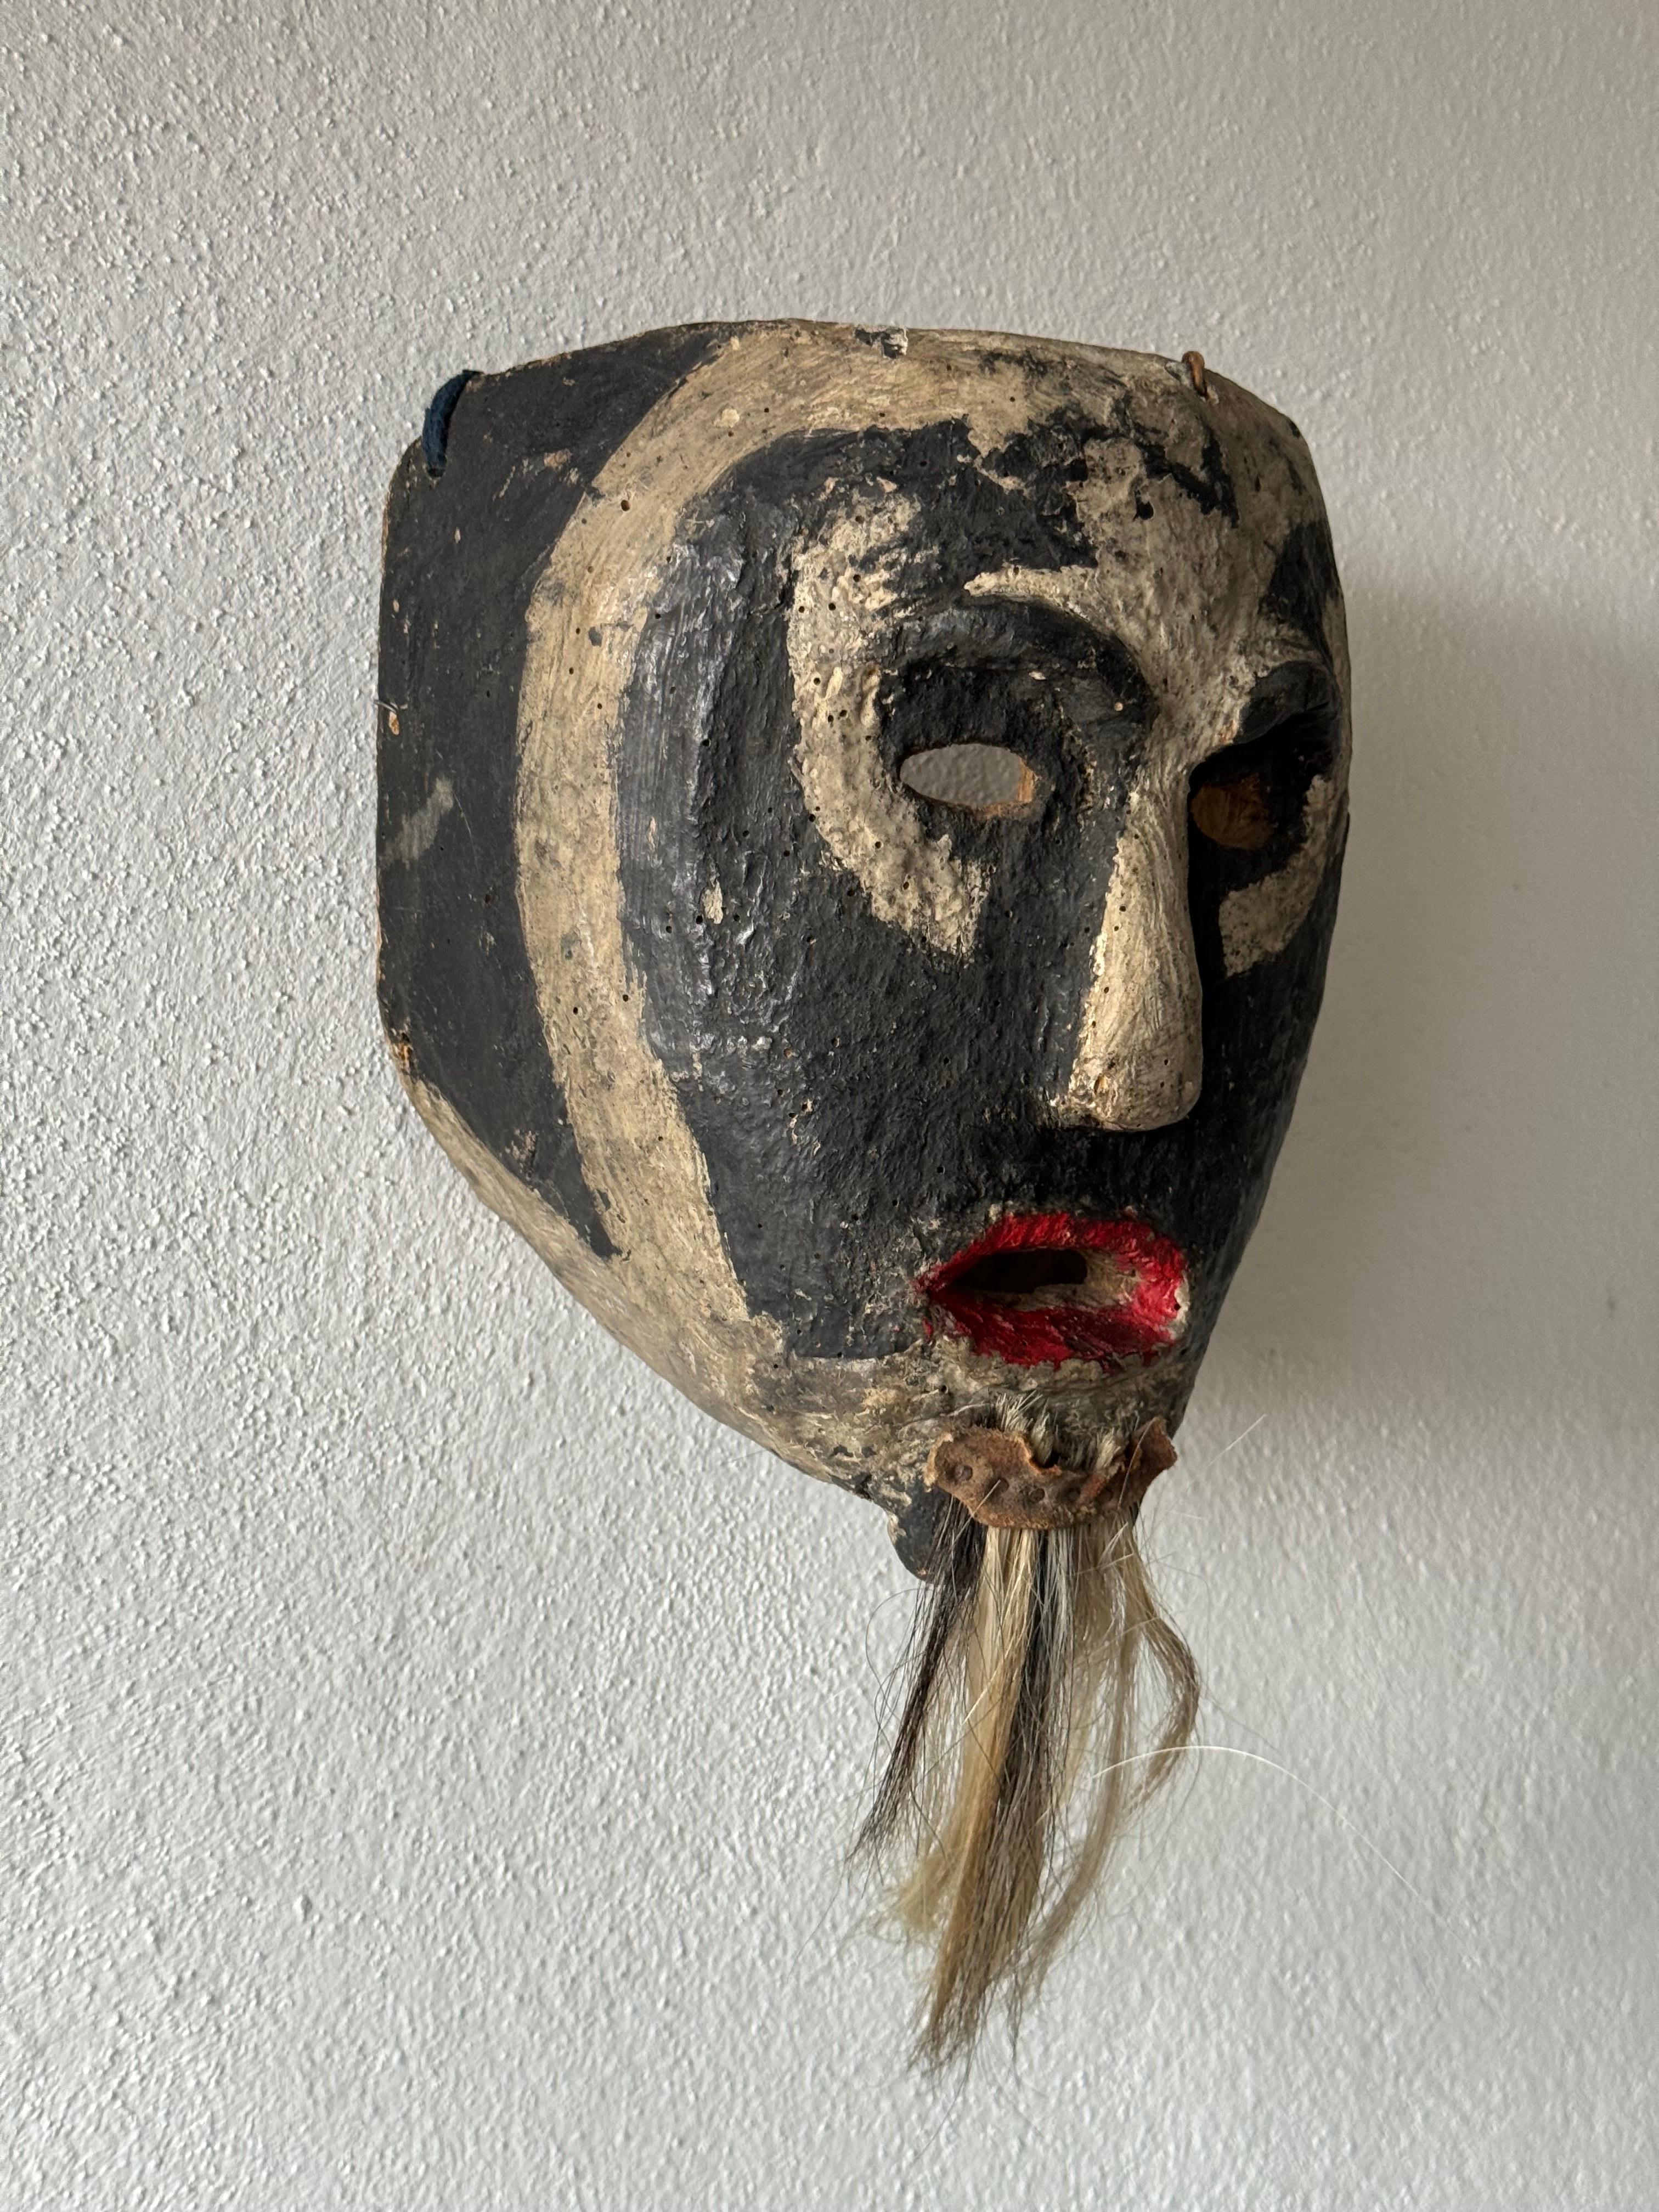 Masque xantolo de la région de Huasteca, dans l'Hidalgo. Ce masque de collection rare a été acquis dans la ville de Townes, dans la municipalité de Huazalingo, au milieu des années 1970.
La fête de Xantolo est une véritable célébration et un hommage